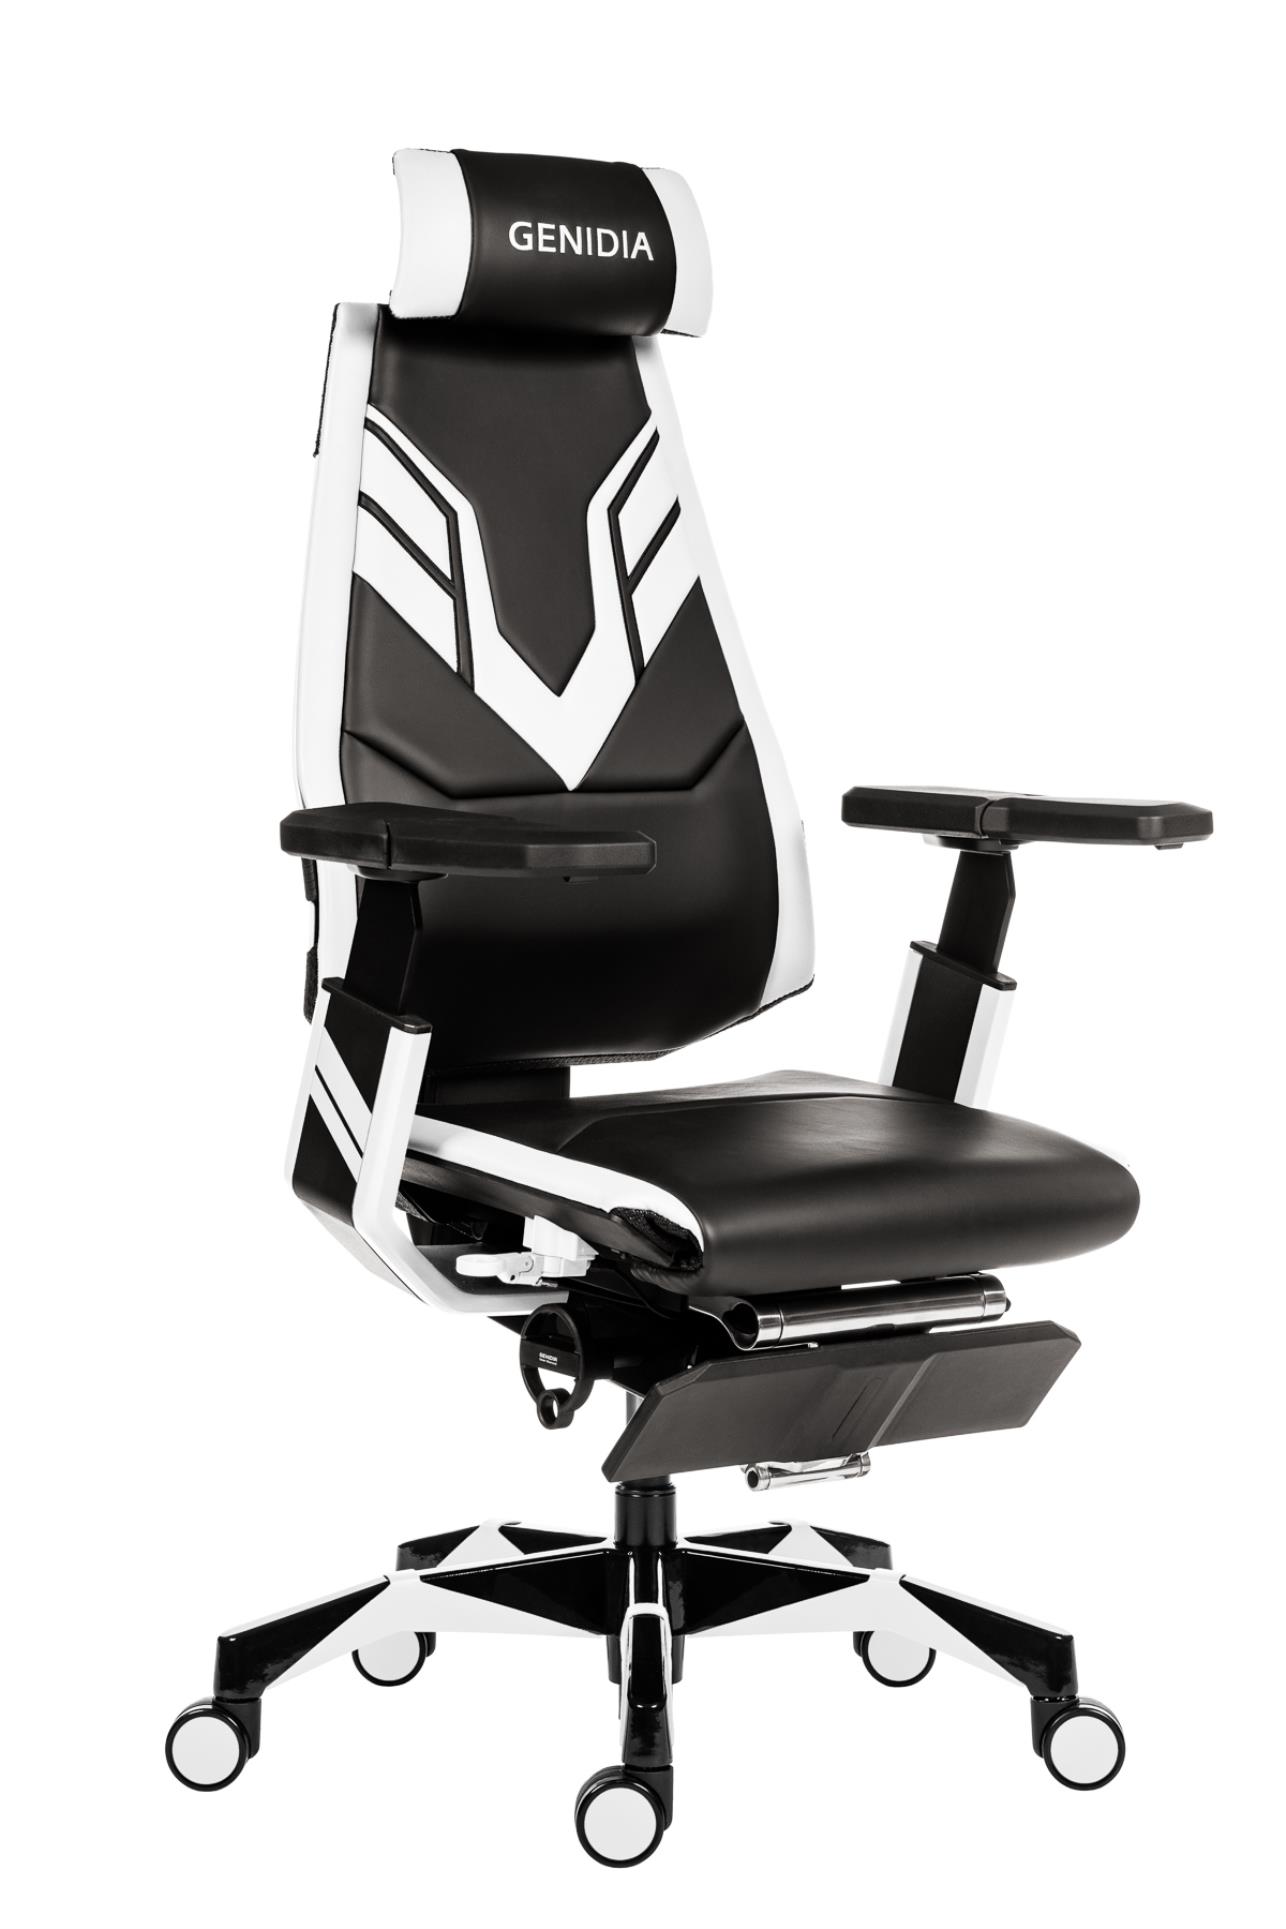 Antares Herní židle Genidia Gaming - synchro, černá/bílá